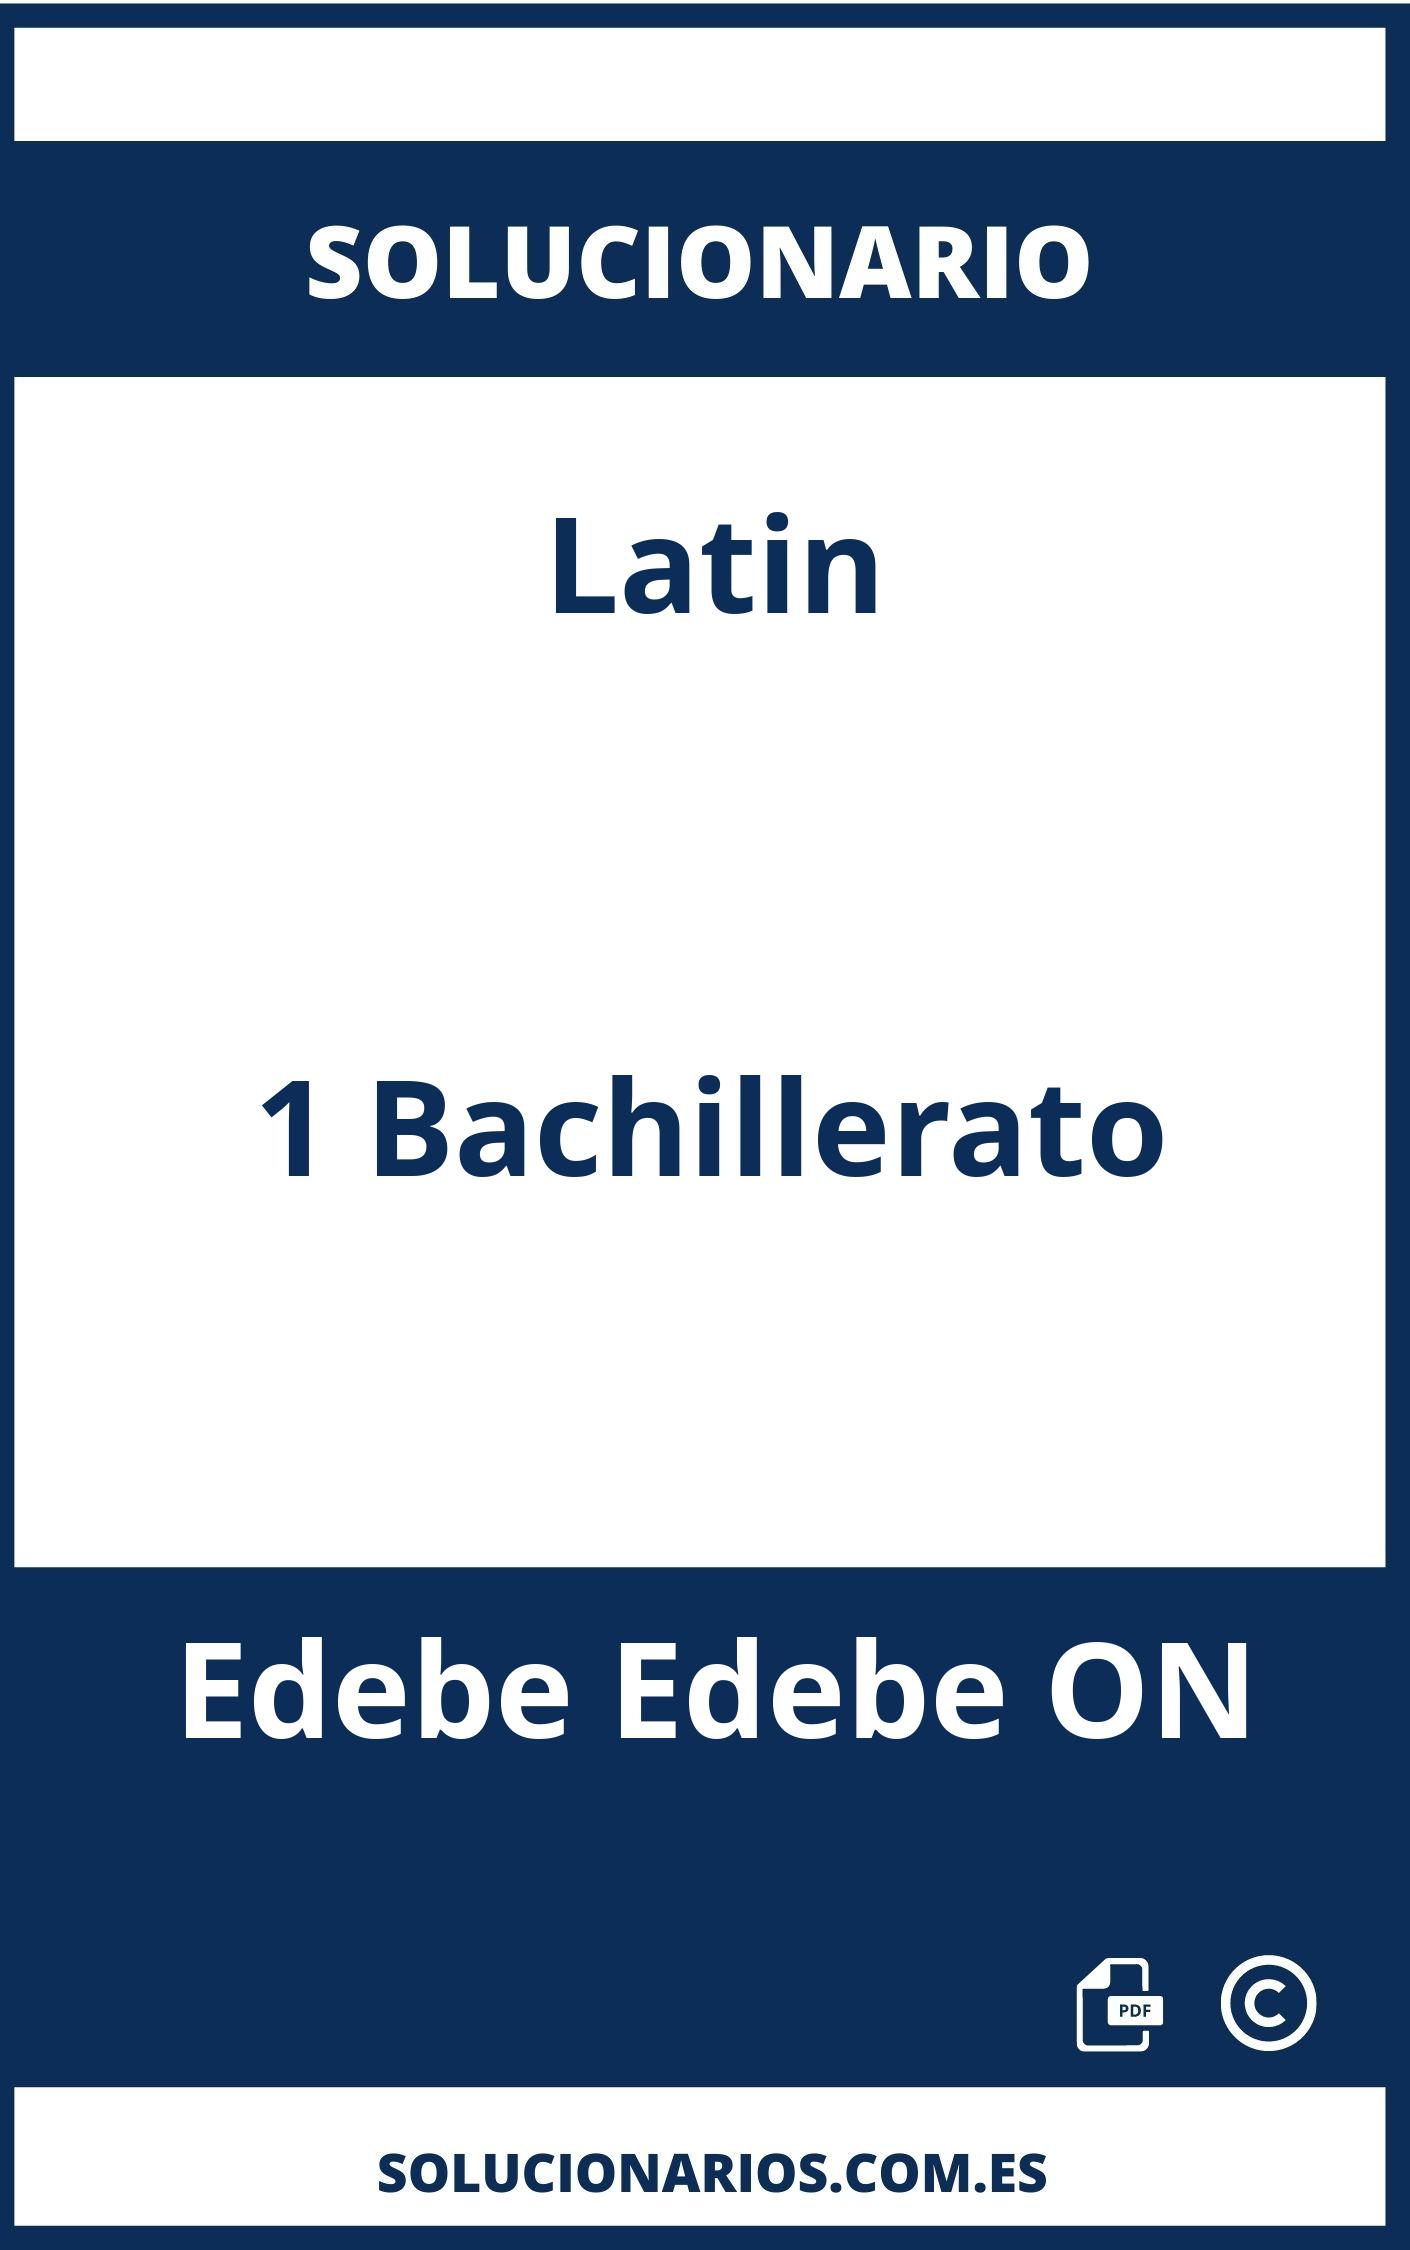 Solucionario Latin 1 Bachillerato Edebe Edebe ON